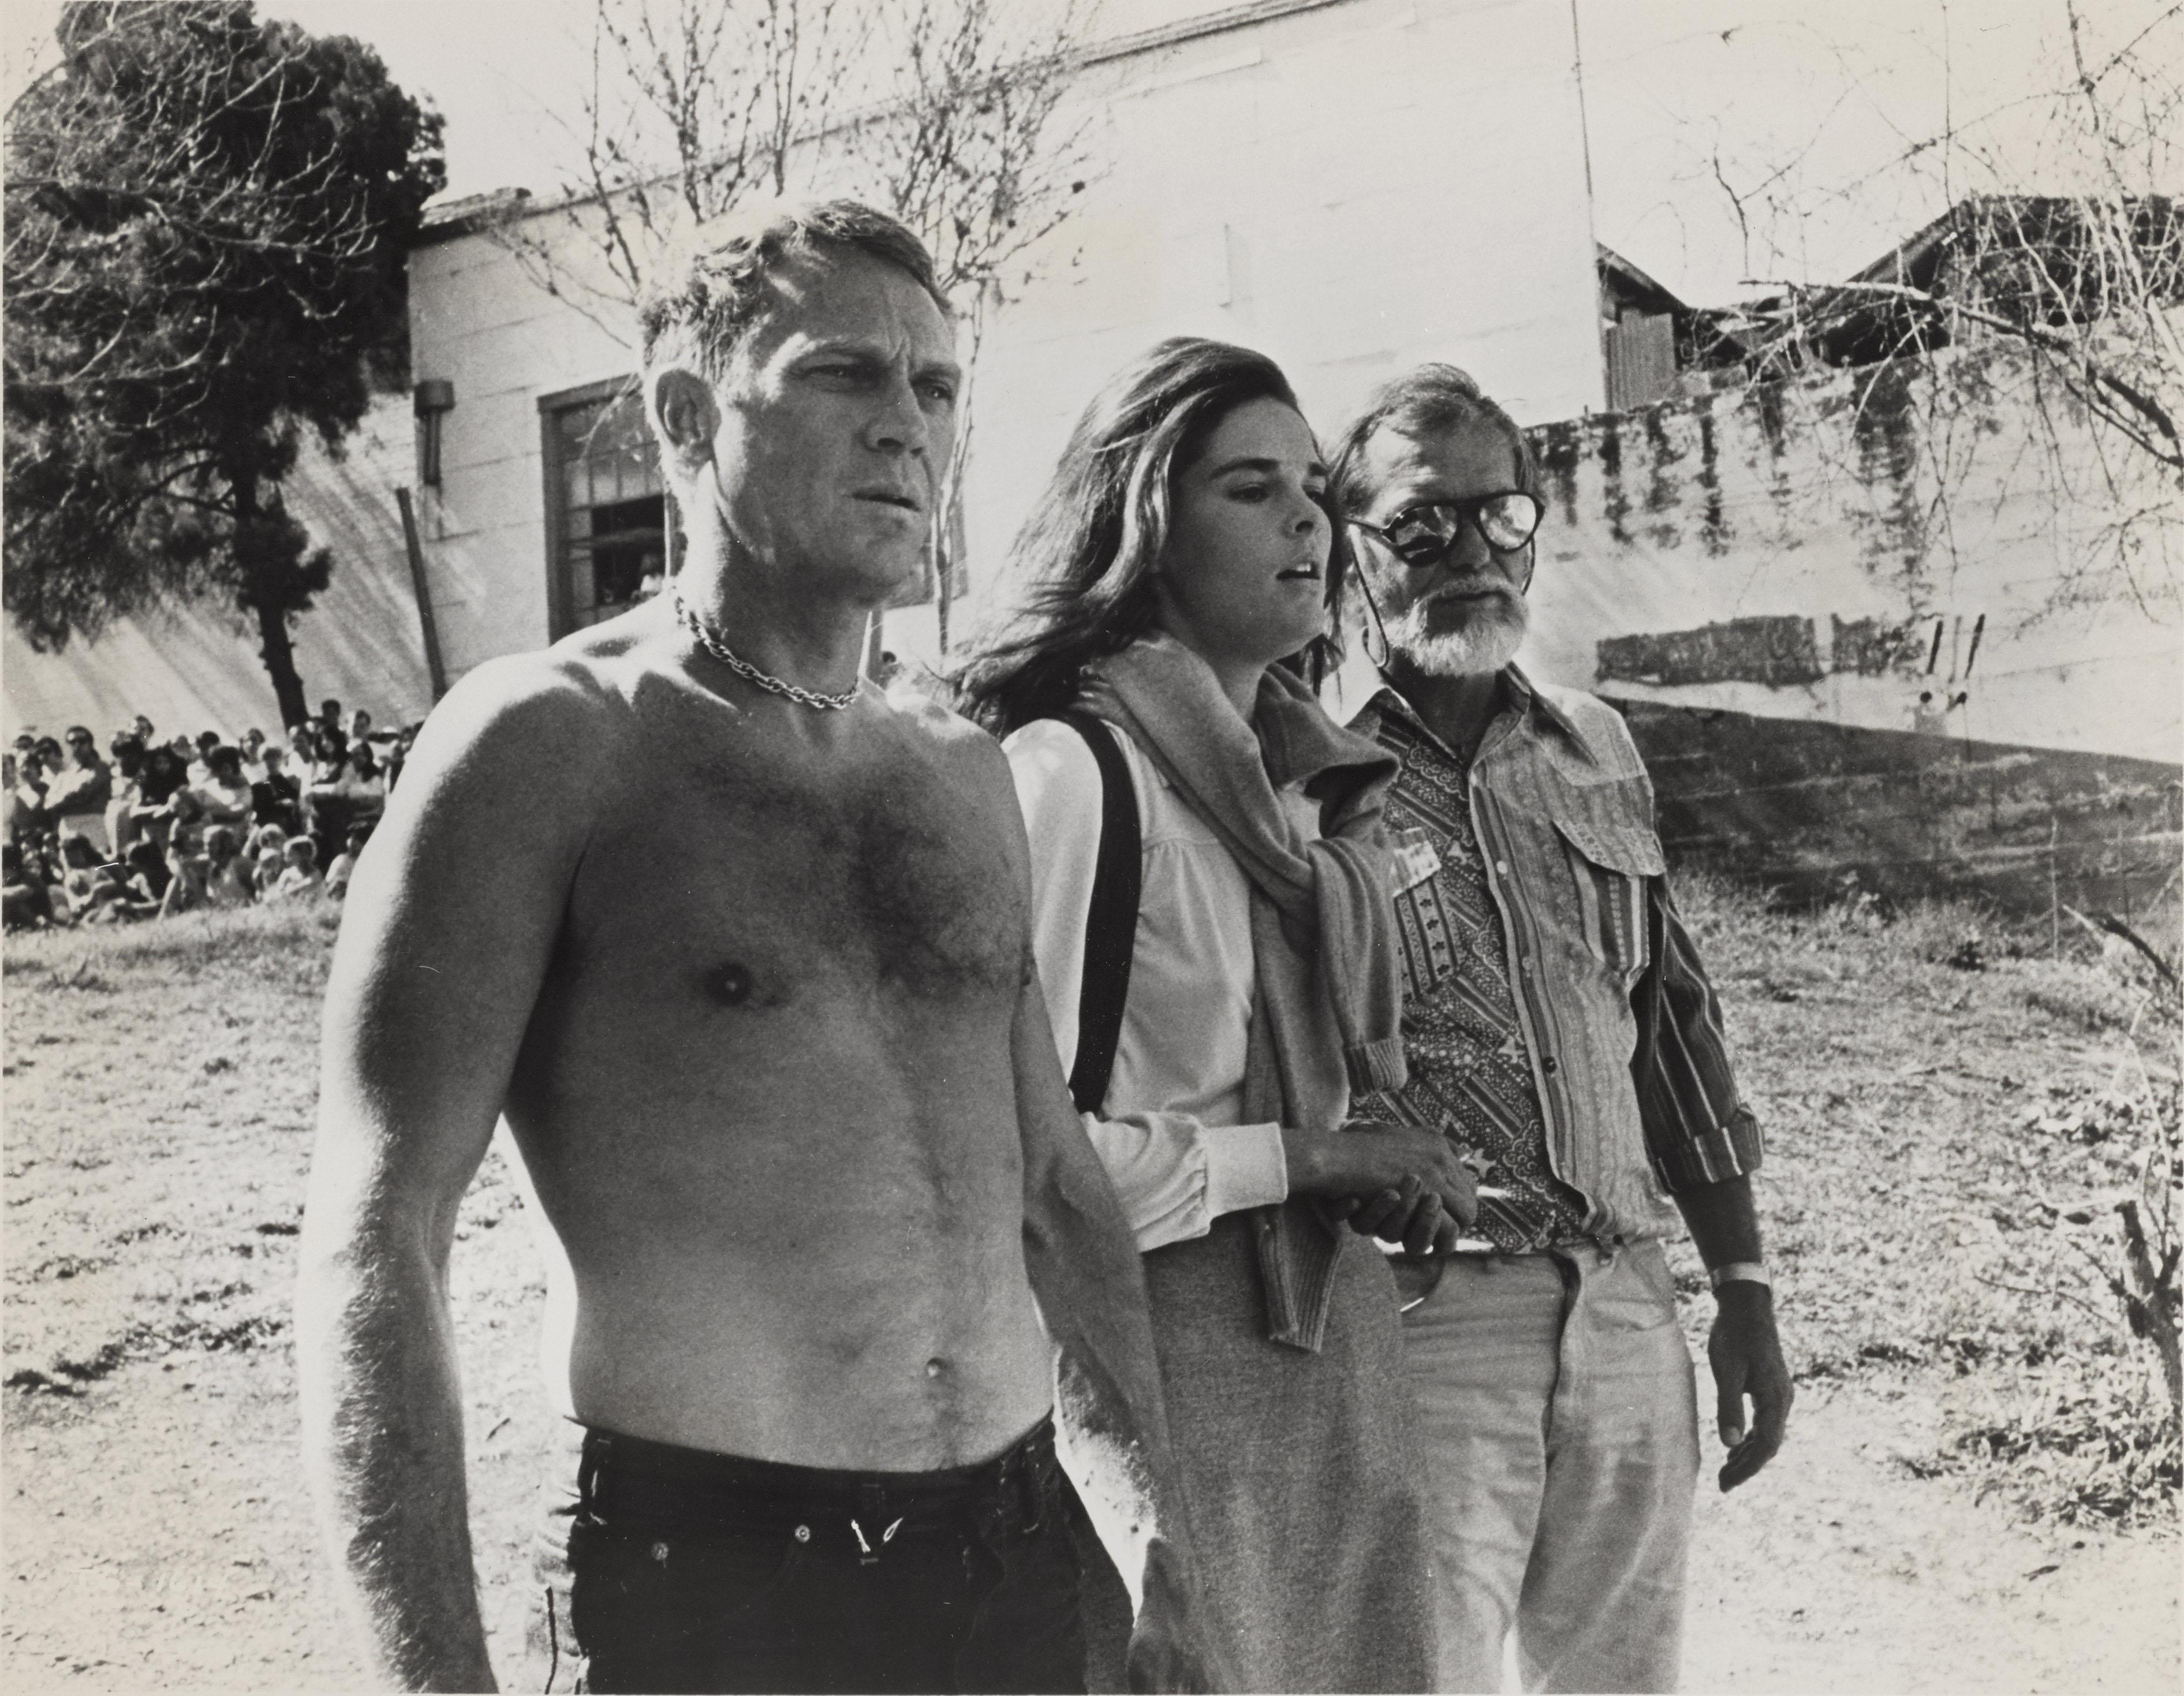 Photo originale de production, tirée du film The Getaway 1972,
Cette photo aurait été tournée pendant le tournage du film et montre Steve McQueen, Ali MacGraw sur le plateau avec Sam Peckinpah, le réalisateur.
Une fenêtre en plexiglas au dos du